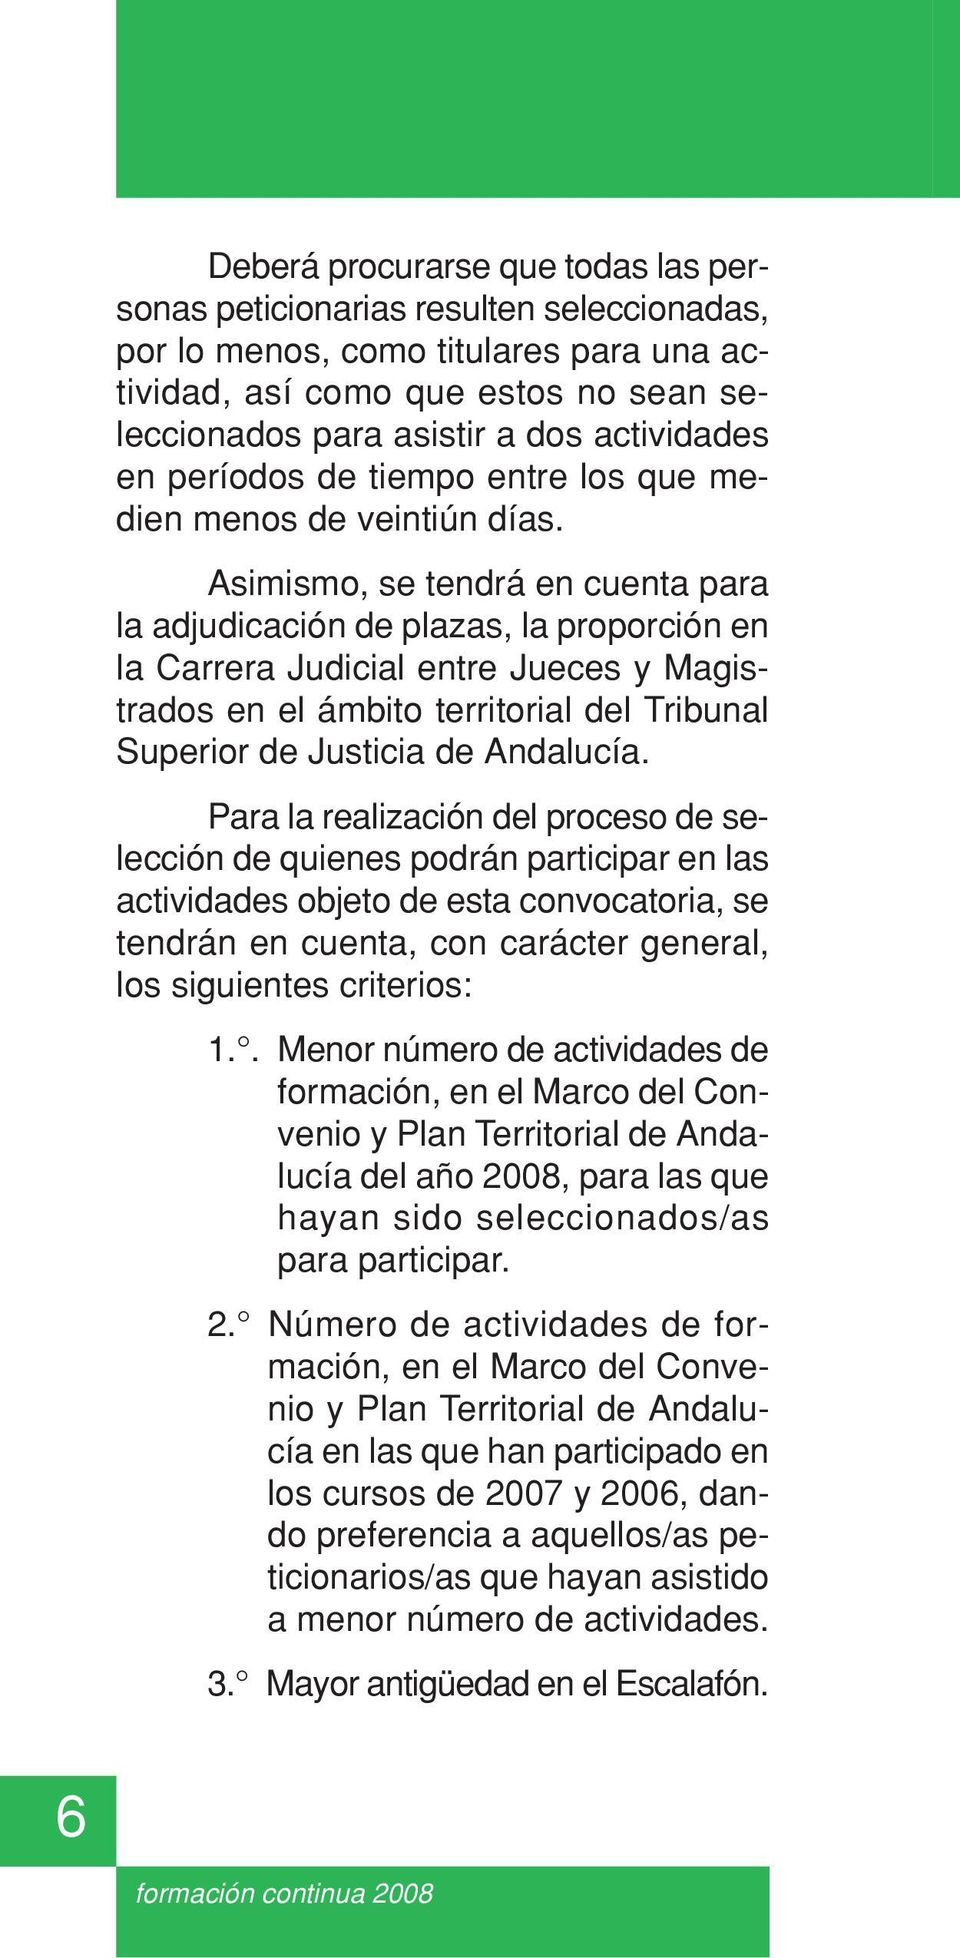 Asimismo, se tendrá en cuenta para la adjudicación de plazas, la proporción en la Carrera Judicial entre Jueces y Magistrados en el ámbito territorial del Tribunal Superior de Justicia de Andalucía.